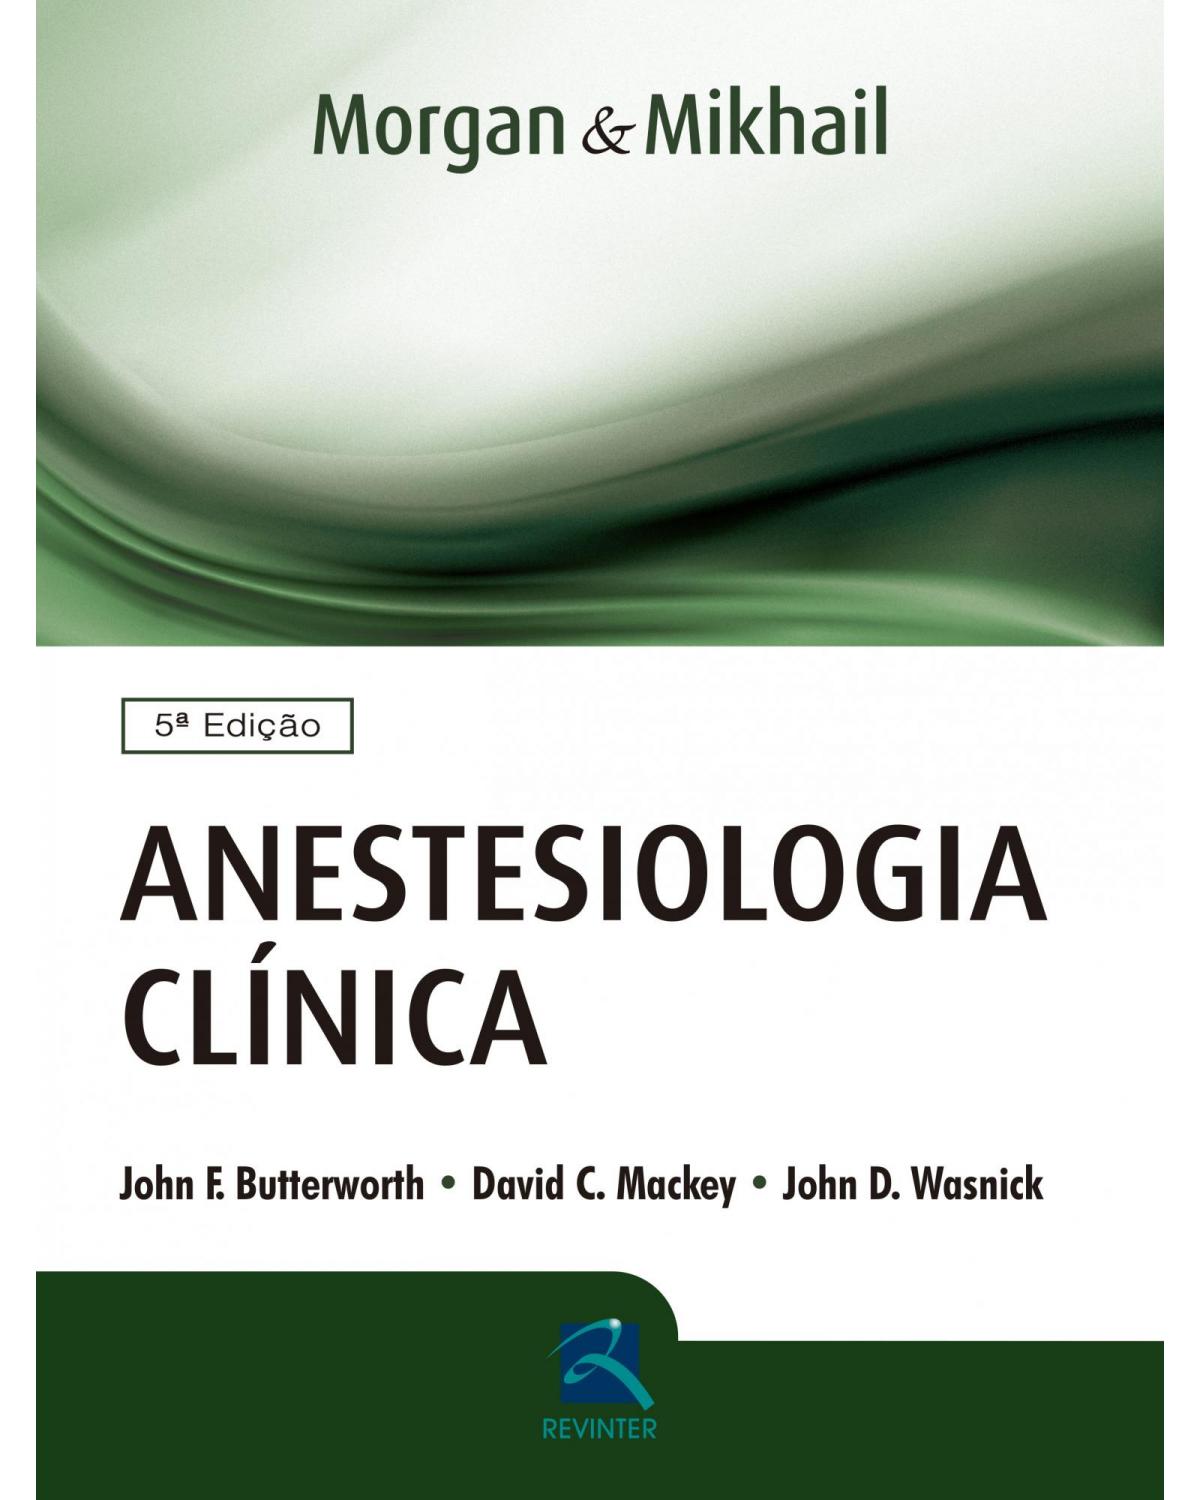 Morgan & Mikhail - Anestesiologia Clínica - 5ª Edição | 2017